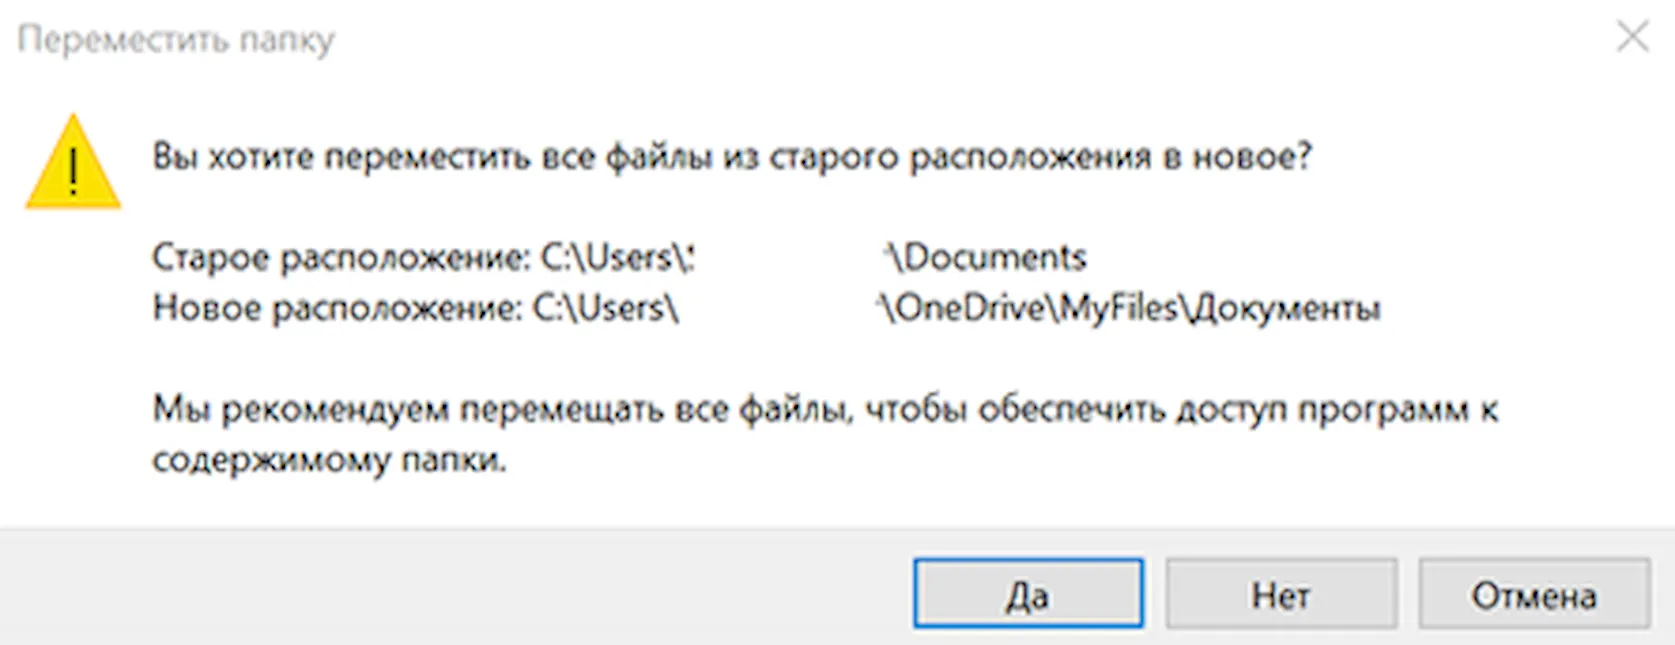 Подтверждение перемещения папки документов в новое место на OneDrive